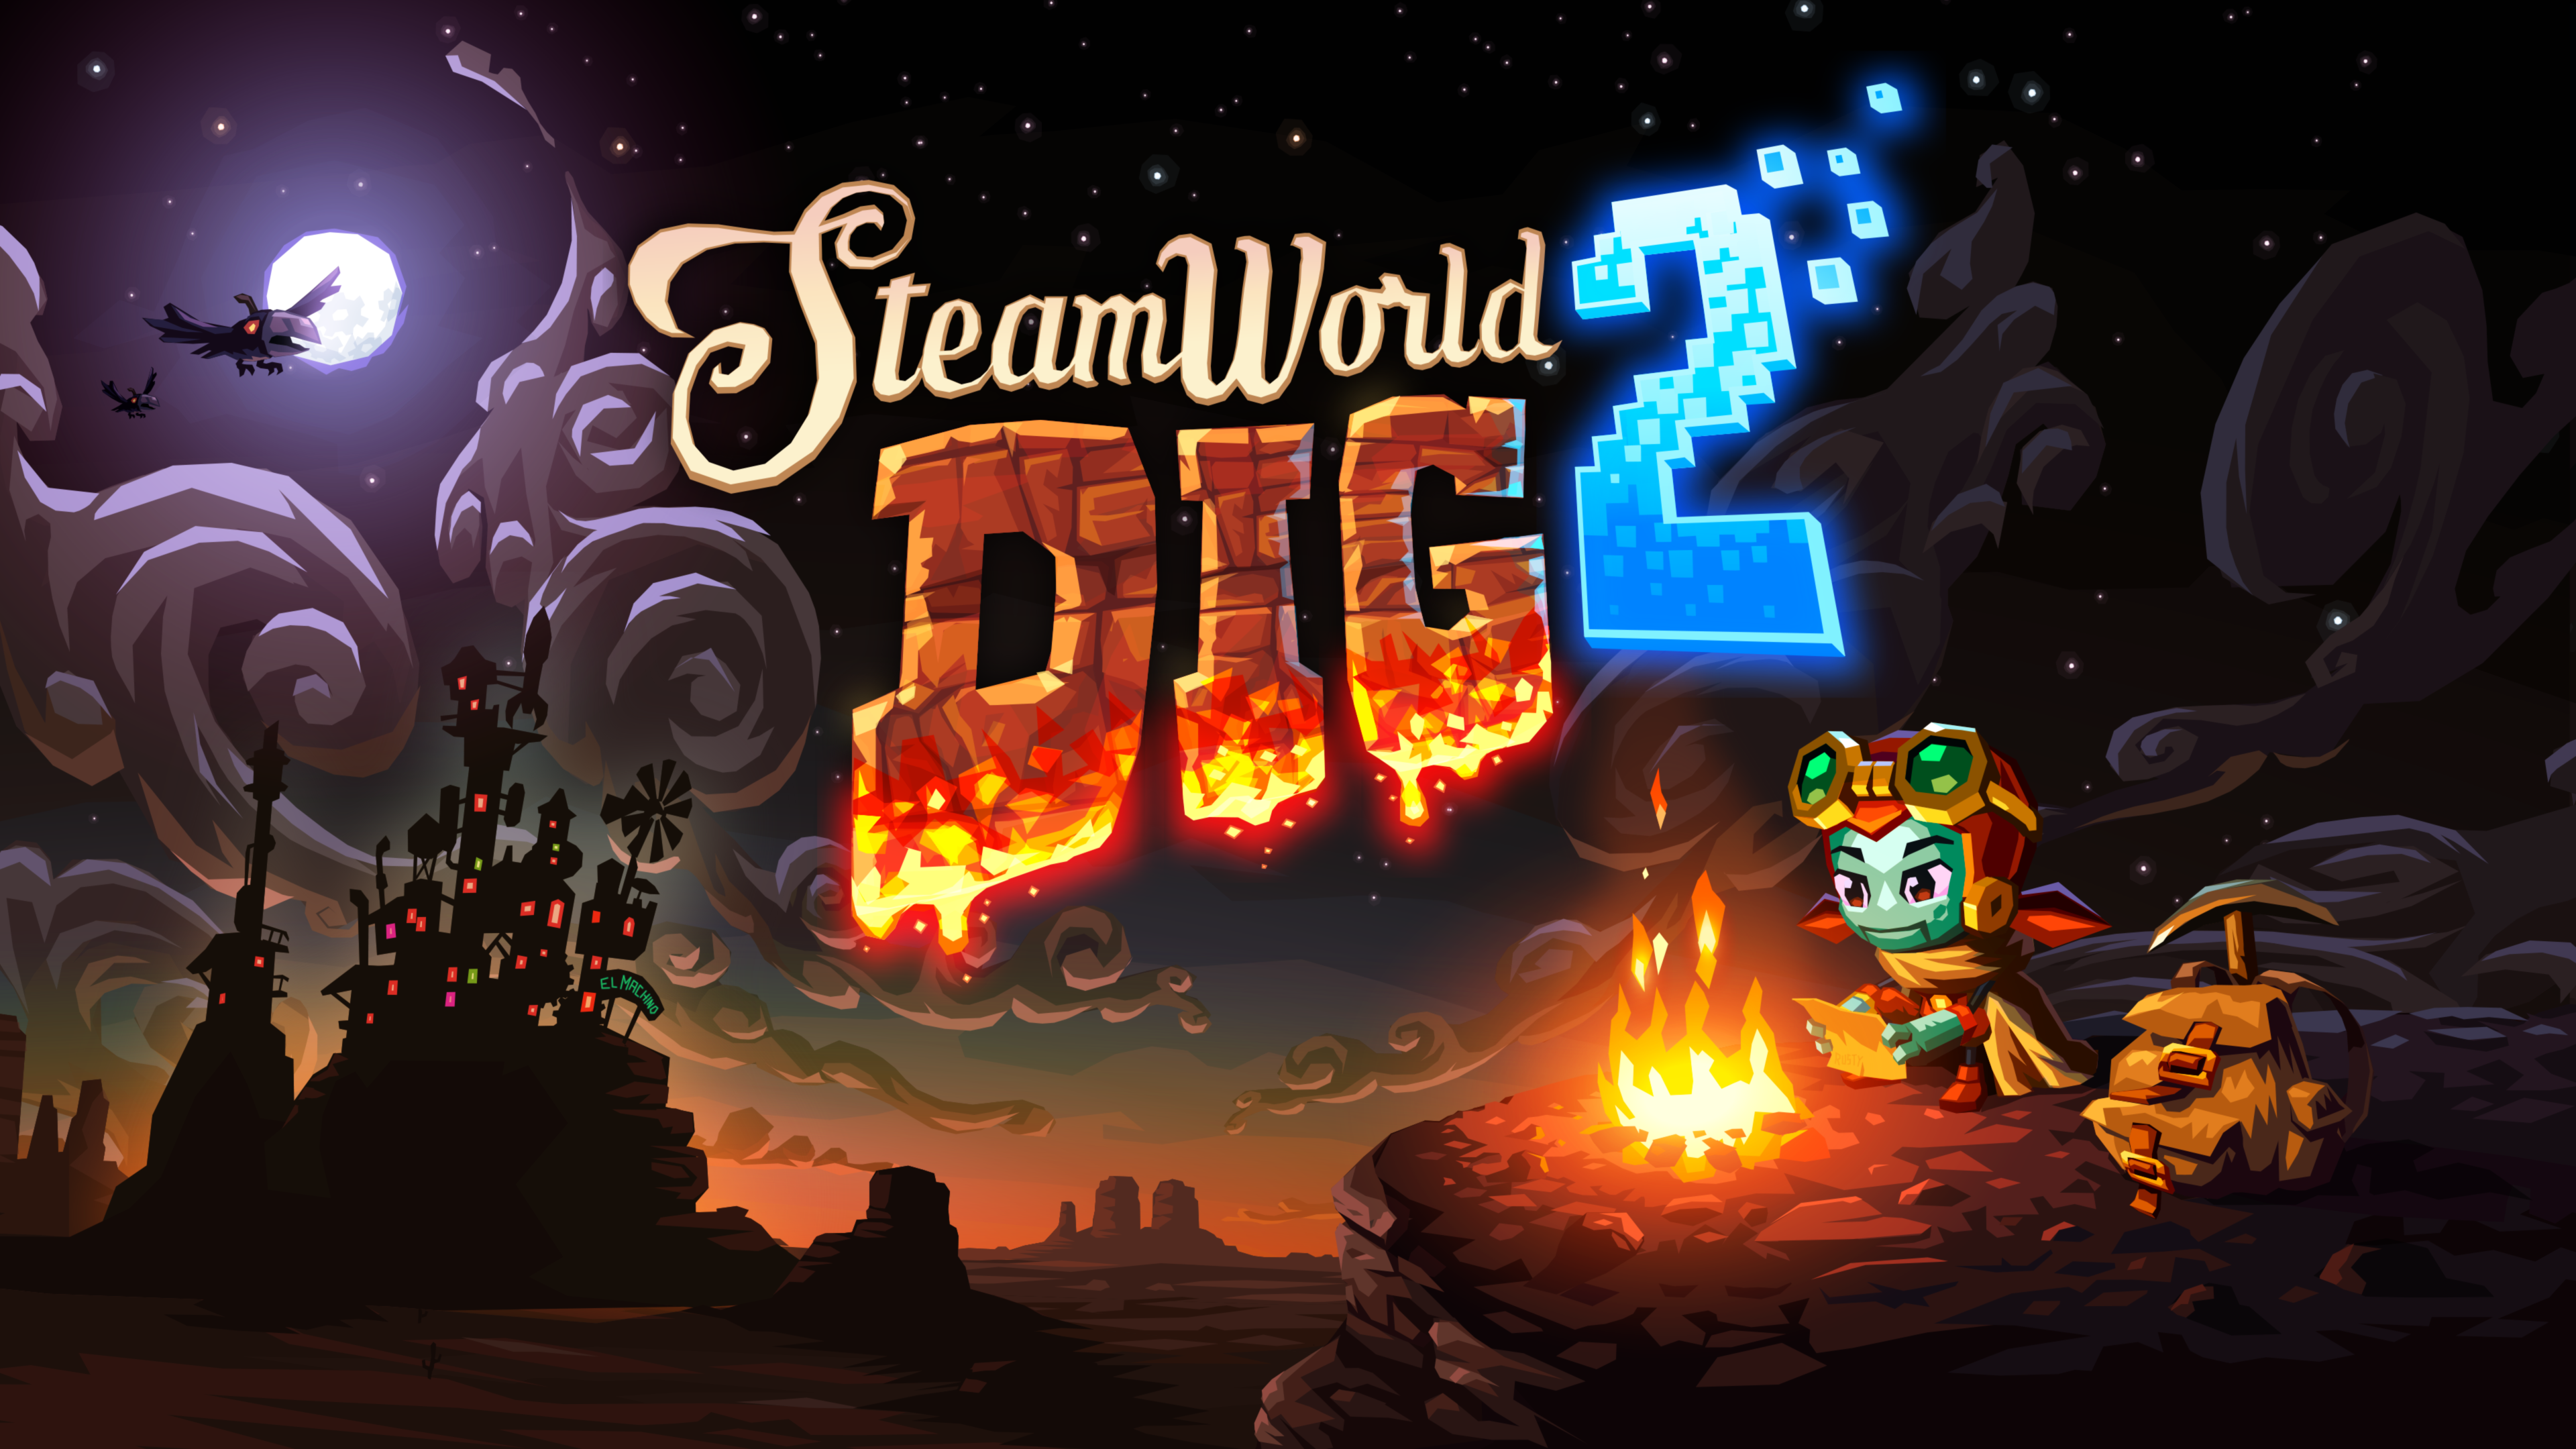 Steamworld Dig Wallpaper 4k Image Form Games